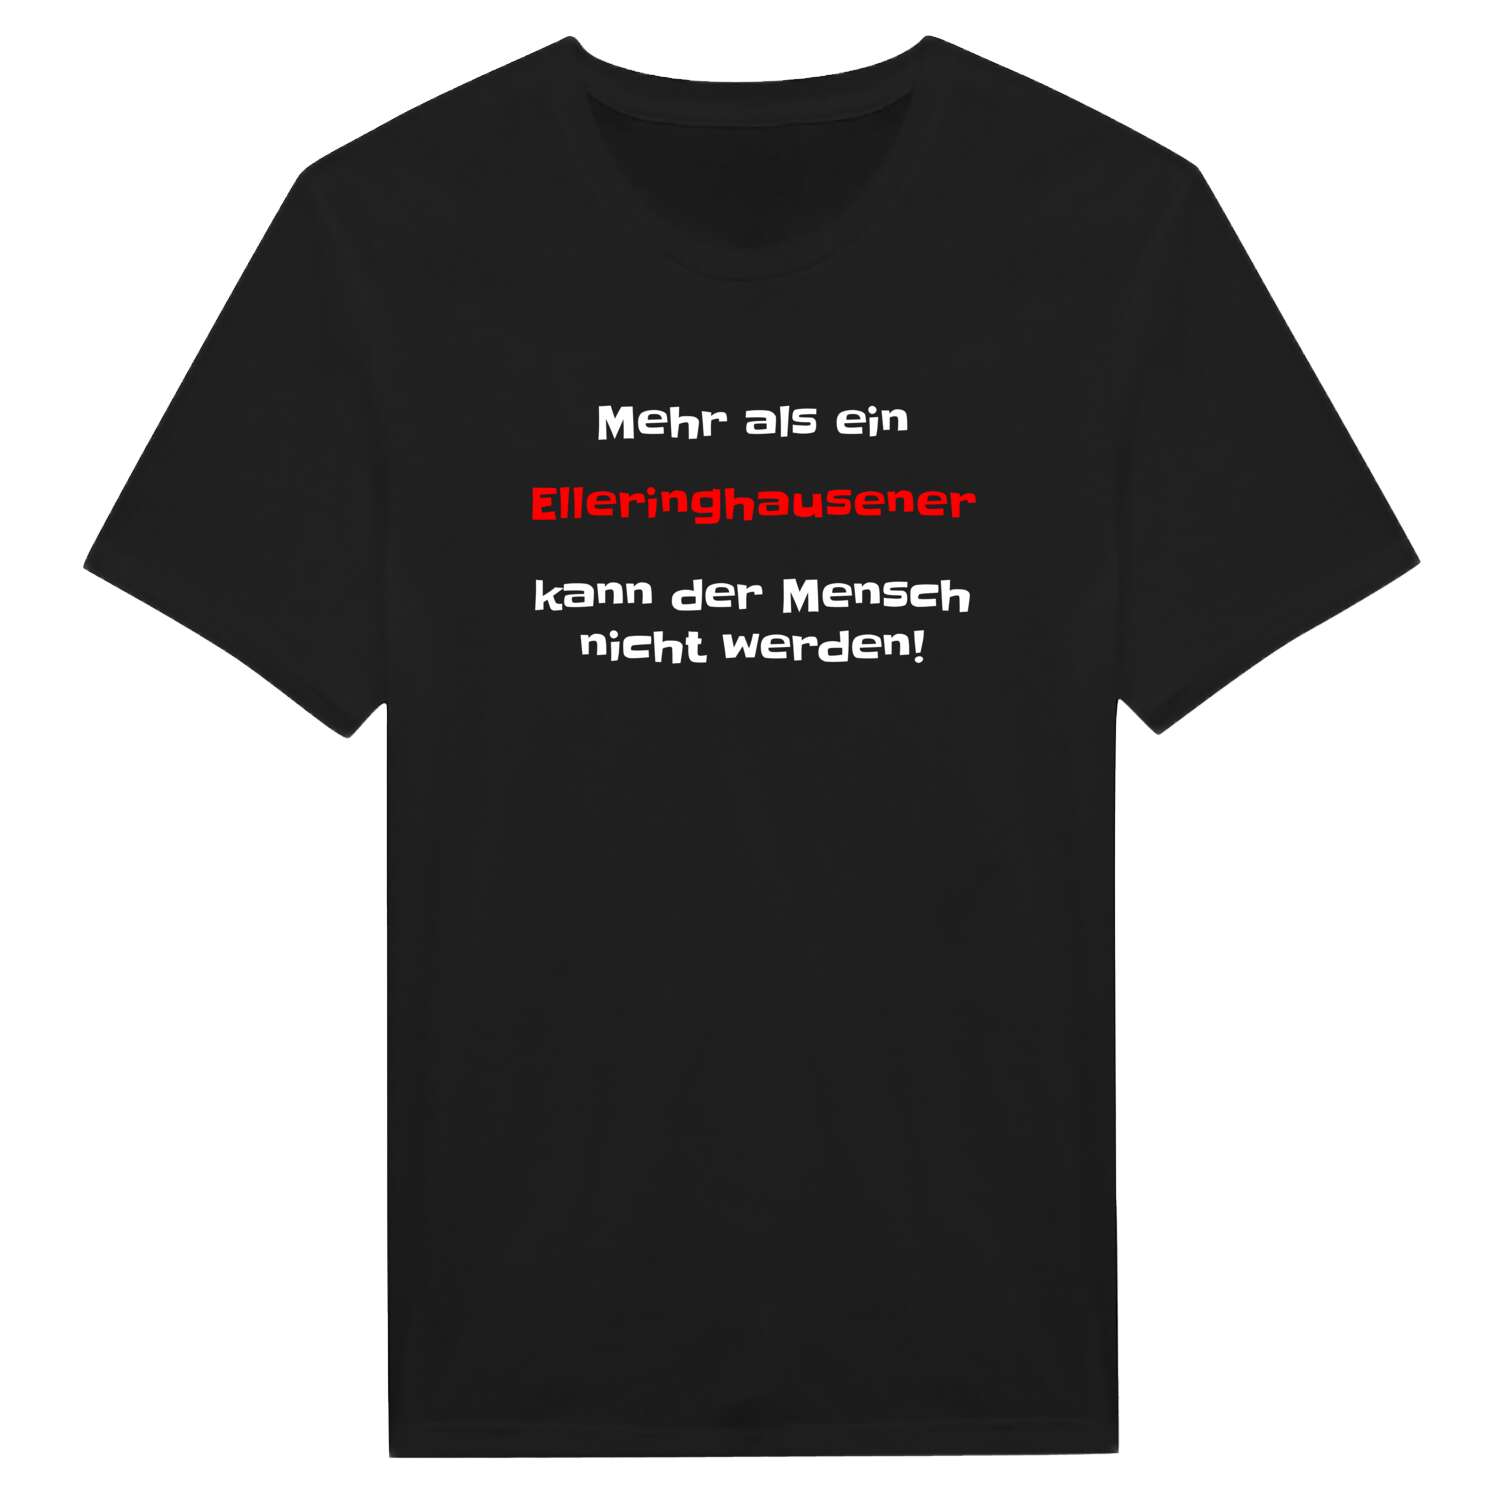 Elleringhausen T-Shirt »Mehr als ein«